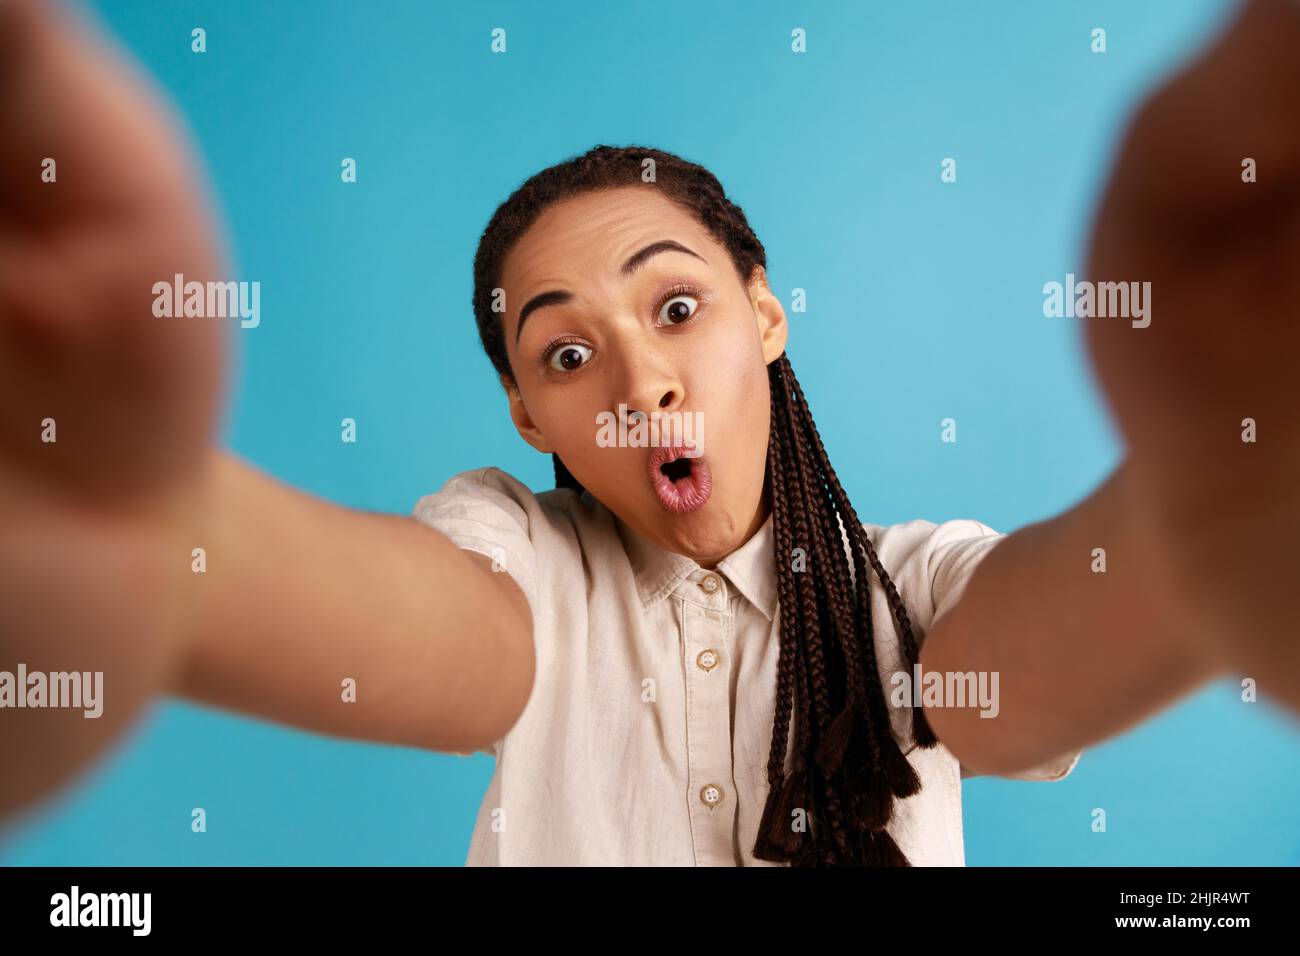 Donna stupita con dreadlocks nero ha sorpreso l'espressione del volto, allunga il braccio per fare selfie, esprime emozioni sincere, punto di vista foto. Studio interno girato isolato su sfondo blu. Foto Stock